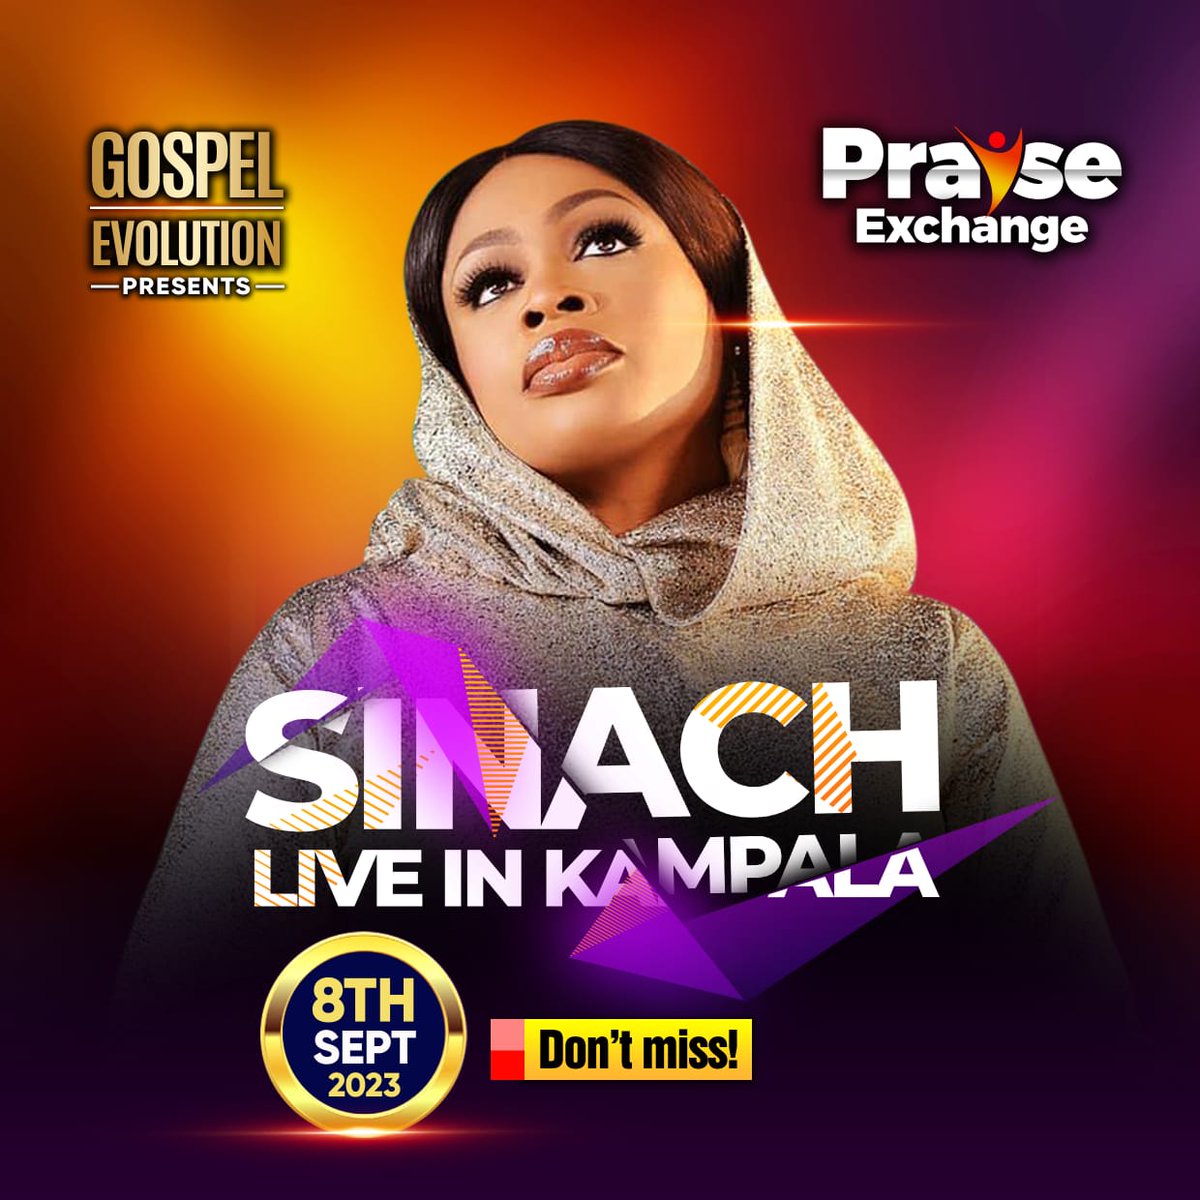 #Praisexchange 8 sept 23 Sinach Live in Kampala @GEpraisexchange @praisexchange20 @praisemtn